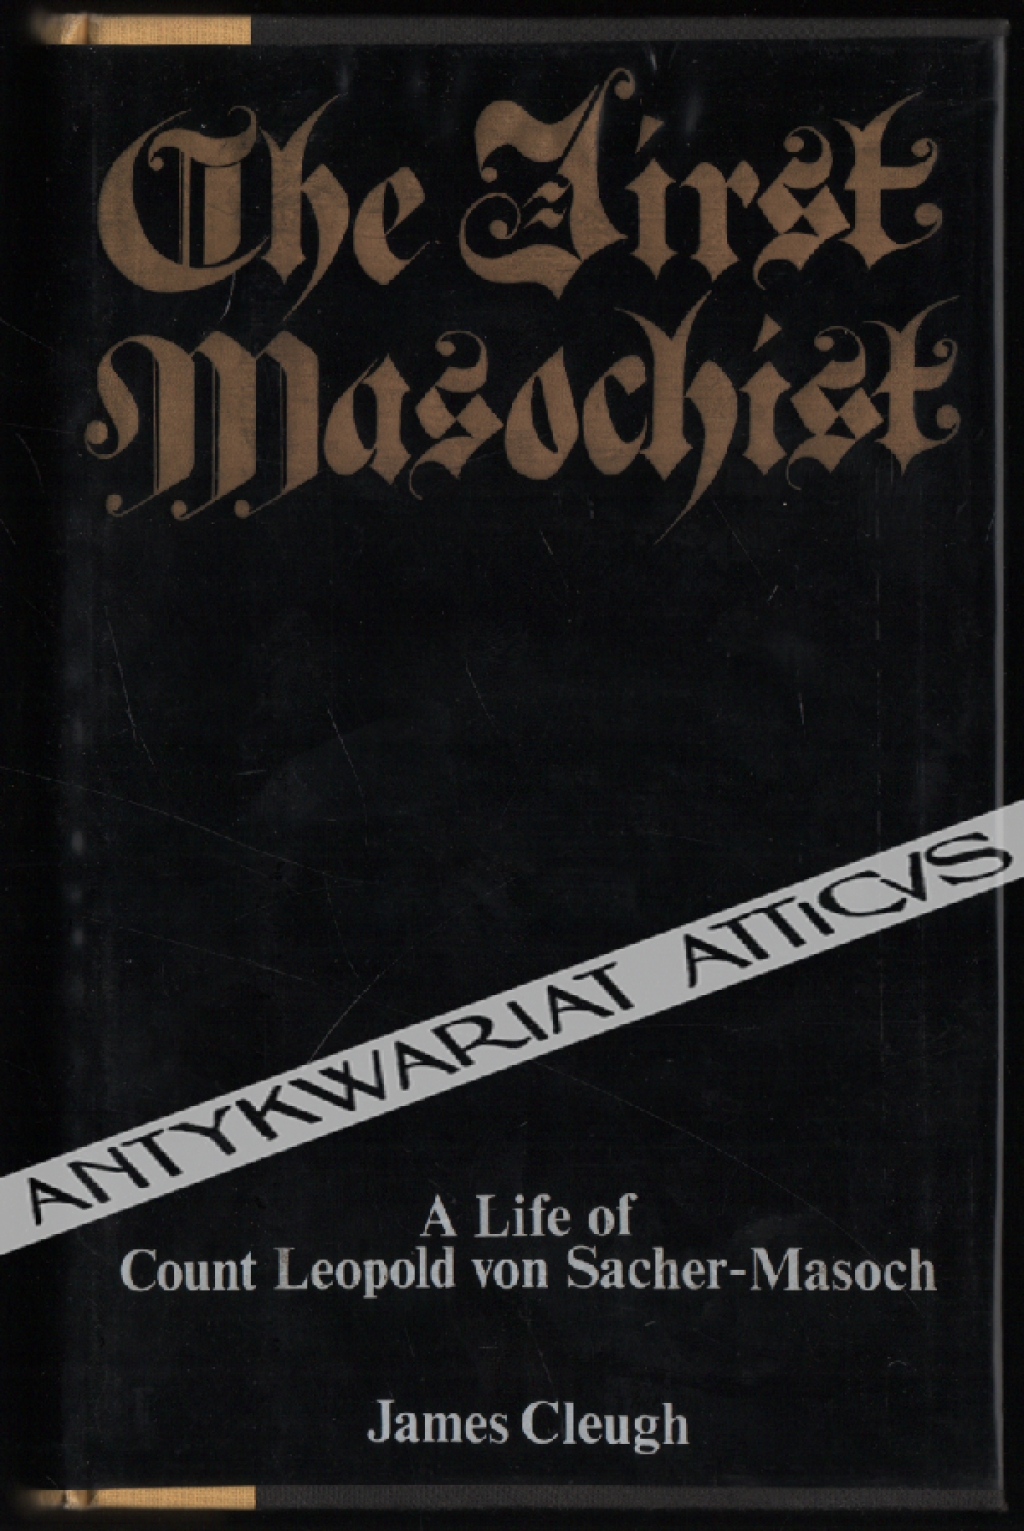 The First Masochist. A biography of Leopold Sacher-Masoch (1836-1895)